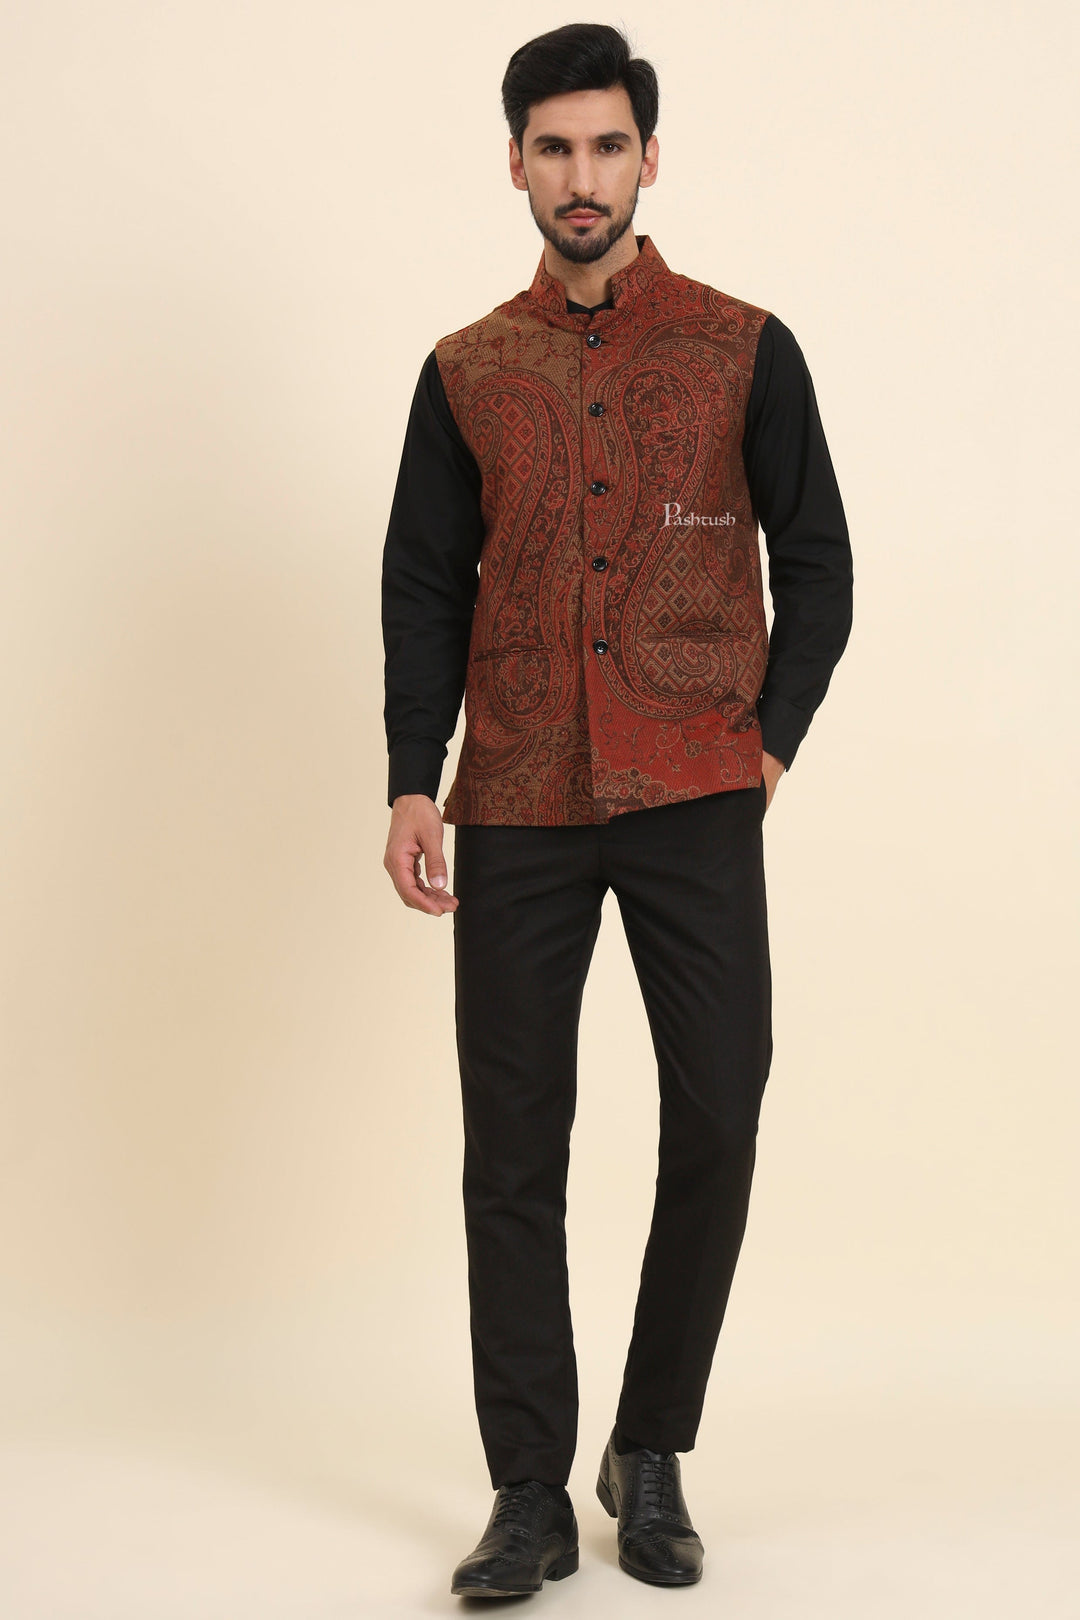 Pashtush India Coats & Jackets Pashtush Mens Woven Jacquard Waistcoat, Structured Slim Fit, Brown